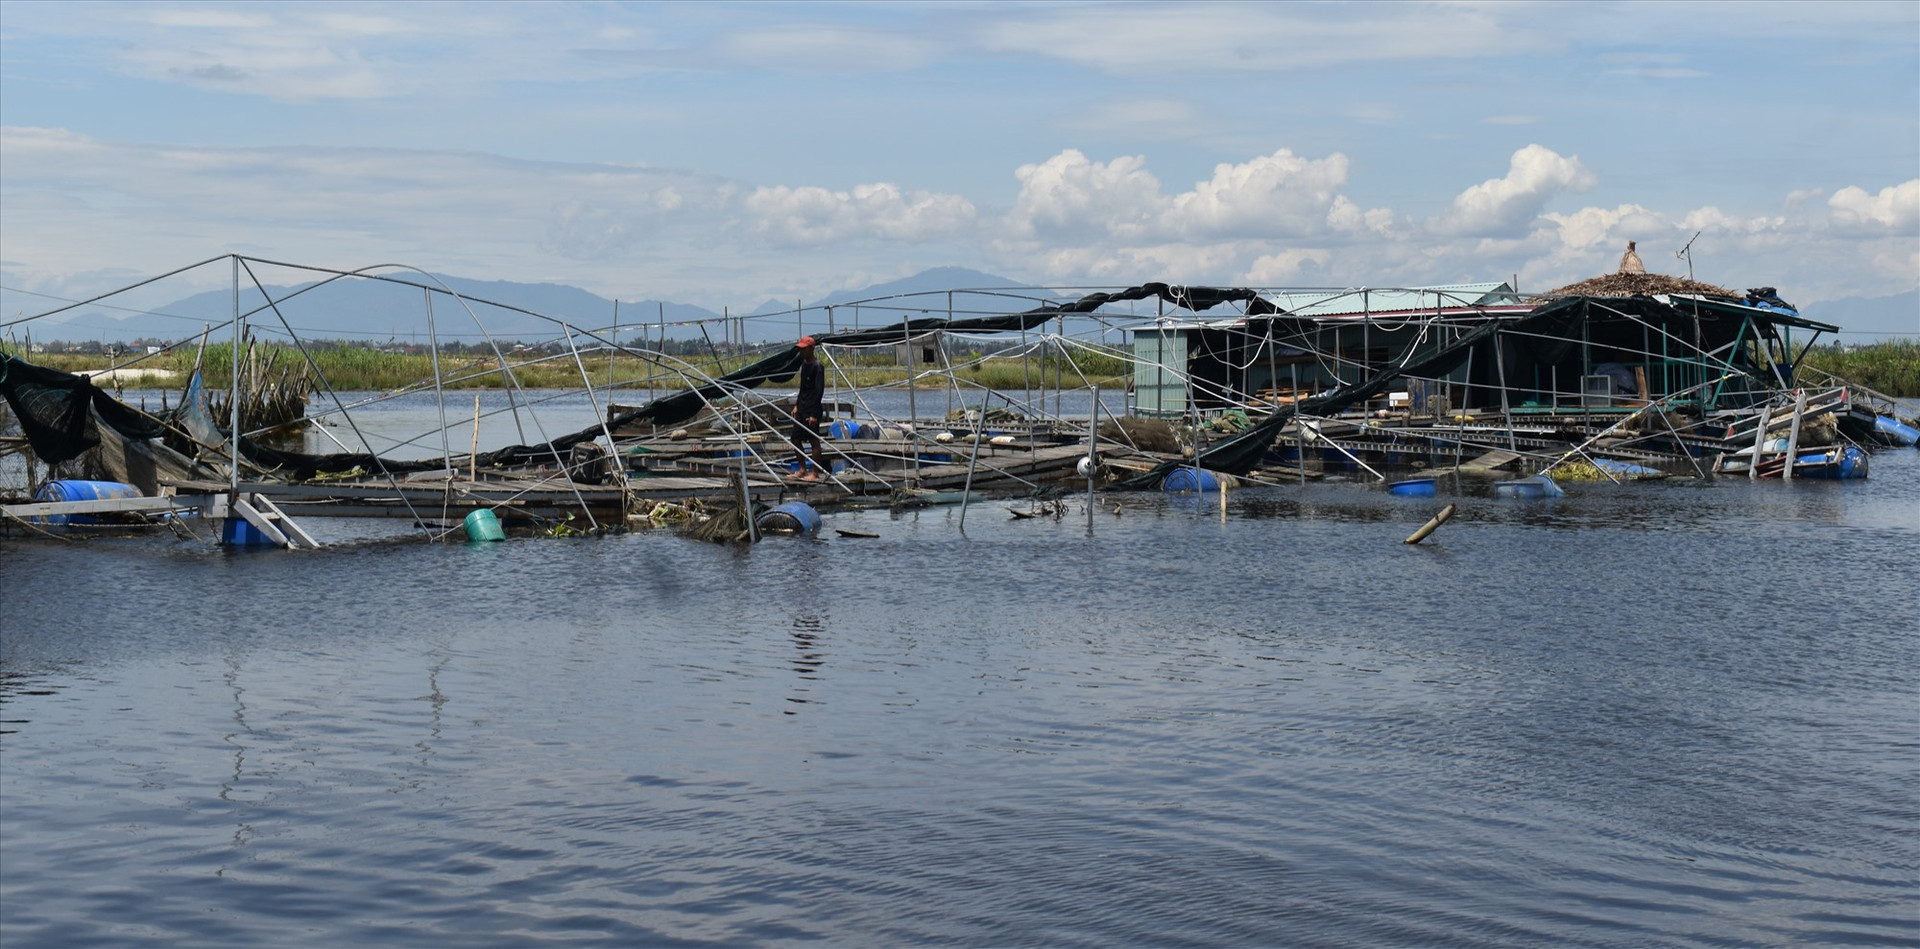 Bè nuôi cá của gia đình ông Báu bị cuốn trôi ra giữa sông Trường Giang, cách vị trí neo lúc ban đầu hơn 1km. Ảnh: N.Q